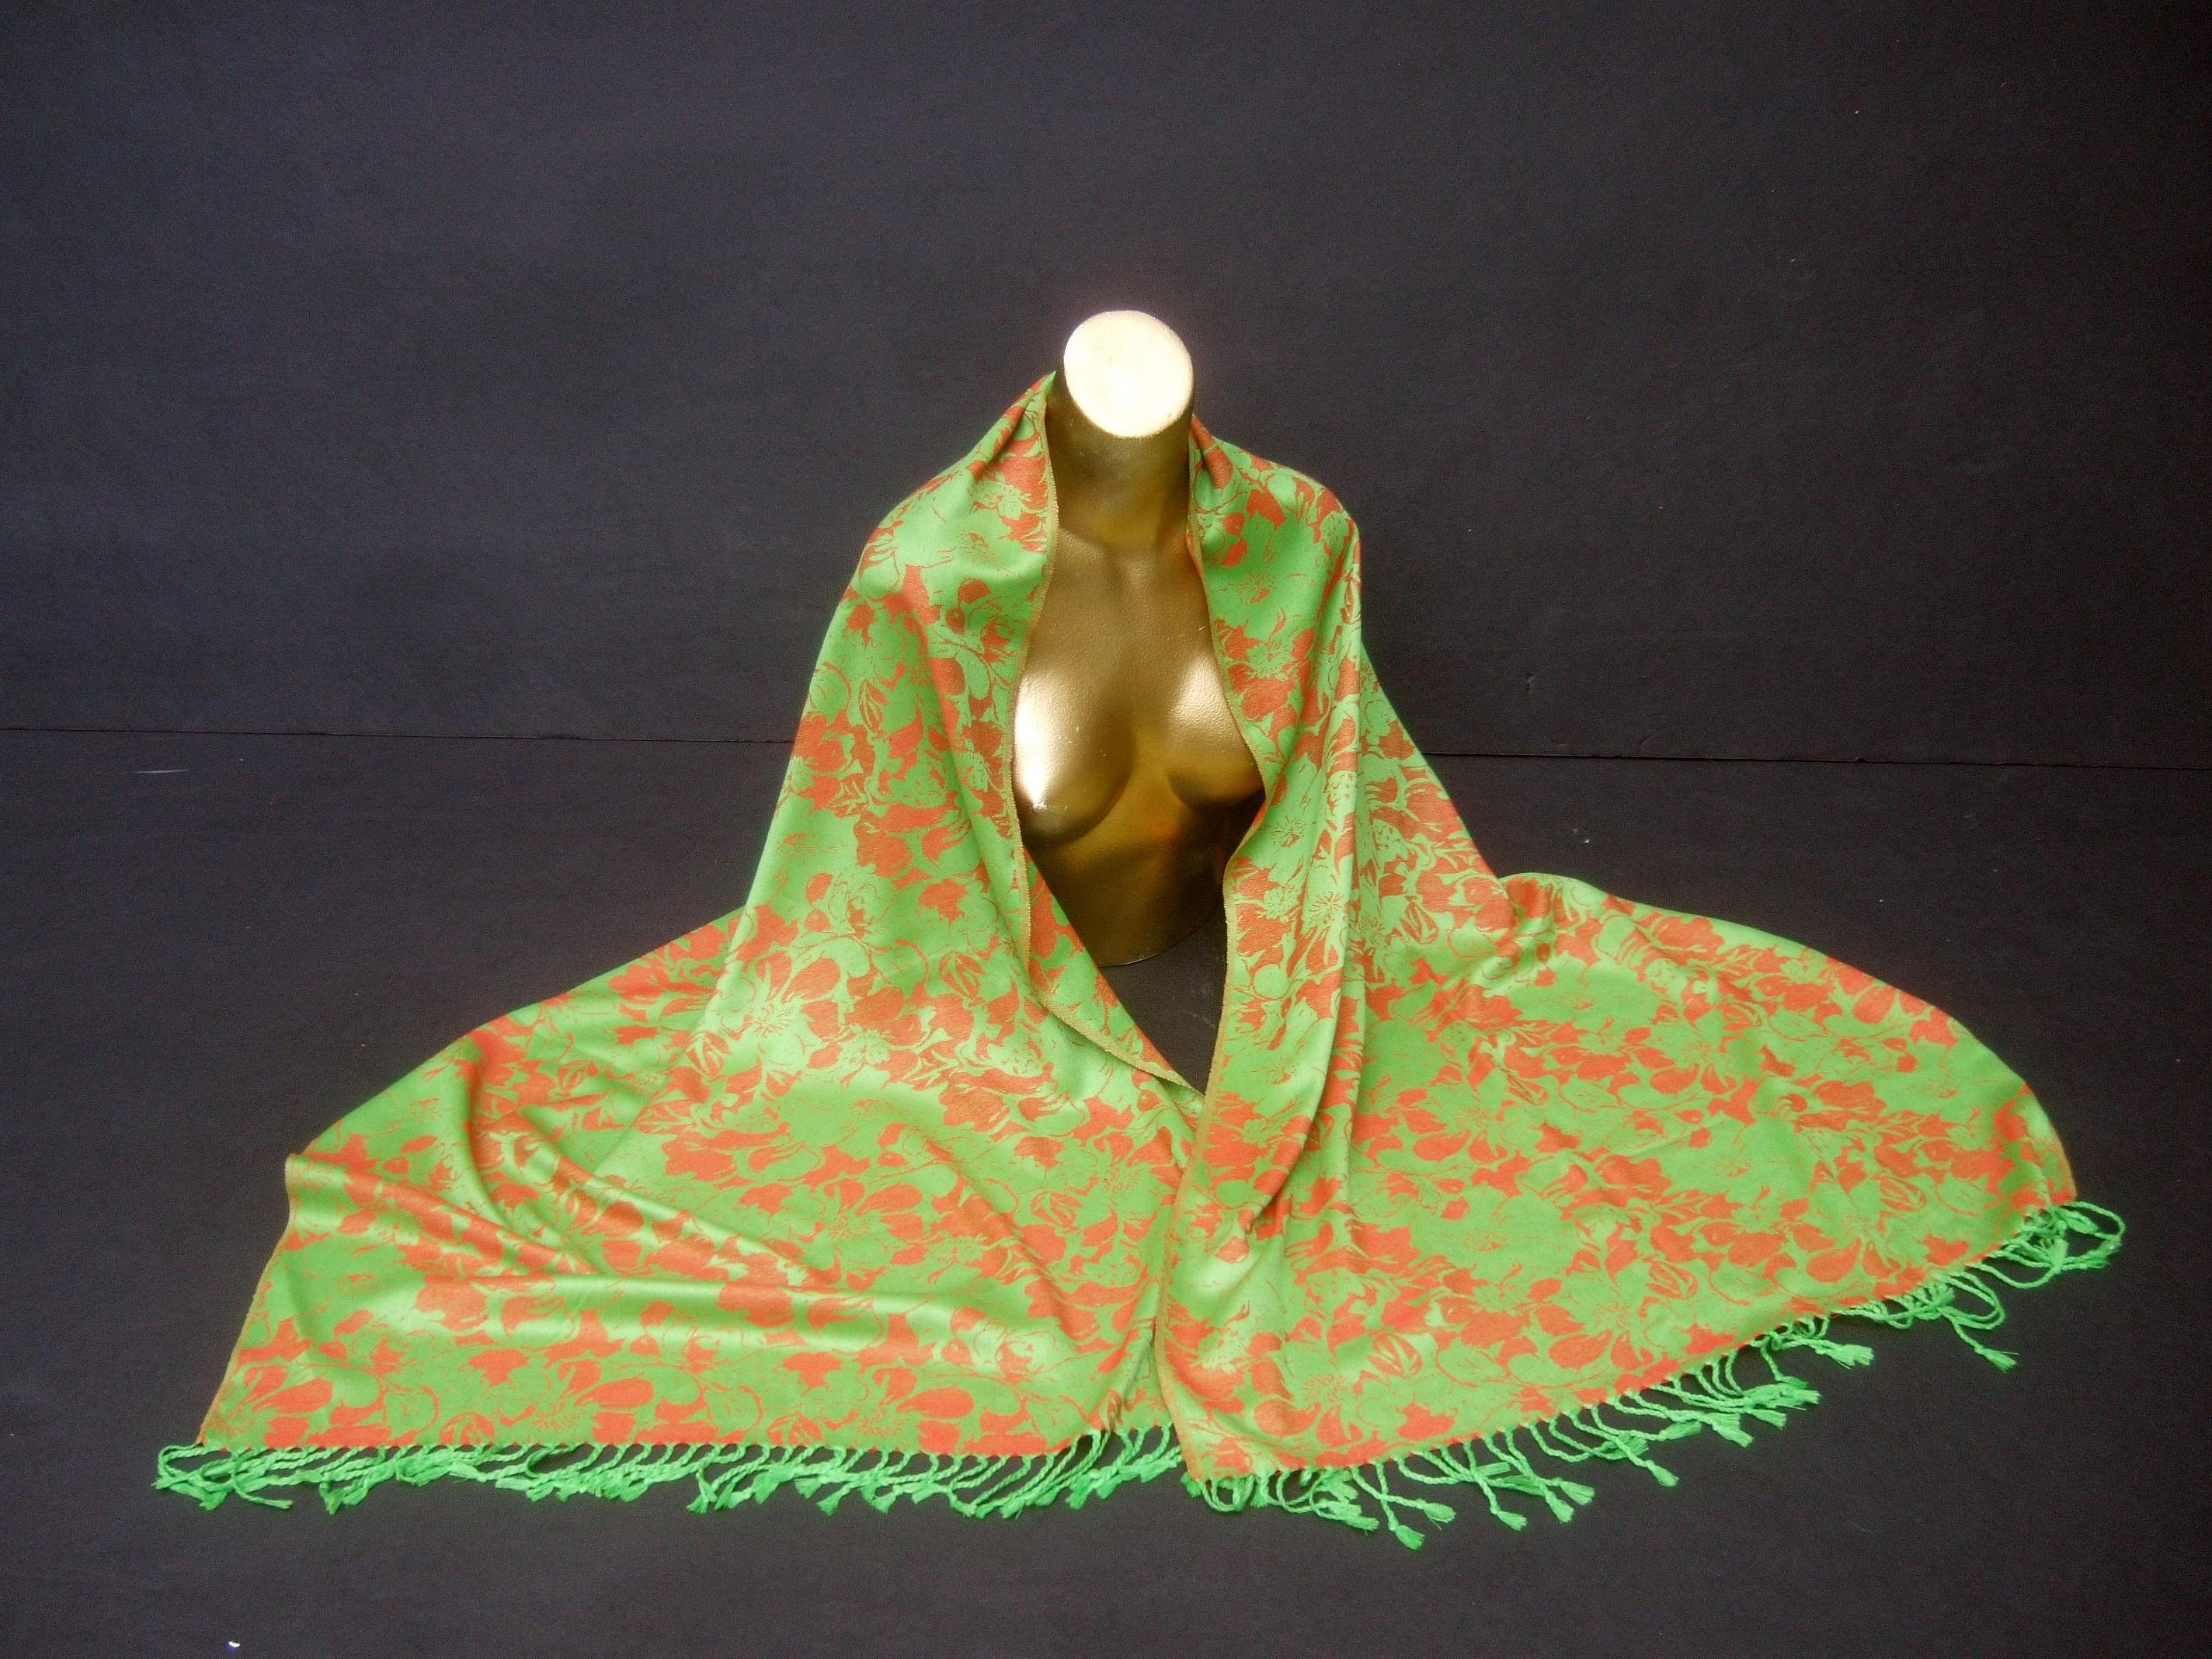 Luxuriöse Kaschmir floral print Fransen Schal-Wrap 74 in x 27 in 
Der elegante Kaschmirschal ist mit kupferfarbener Farbe durchzogen
blütenblätter; daneben eine apfelgrüne Chartreuse 
hintergrund

Das vielseitige Textil kann in unzähligen Varianten